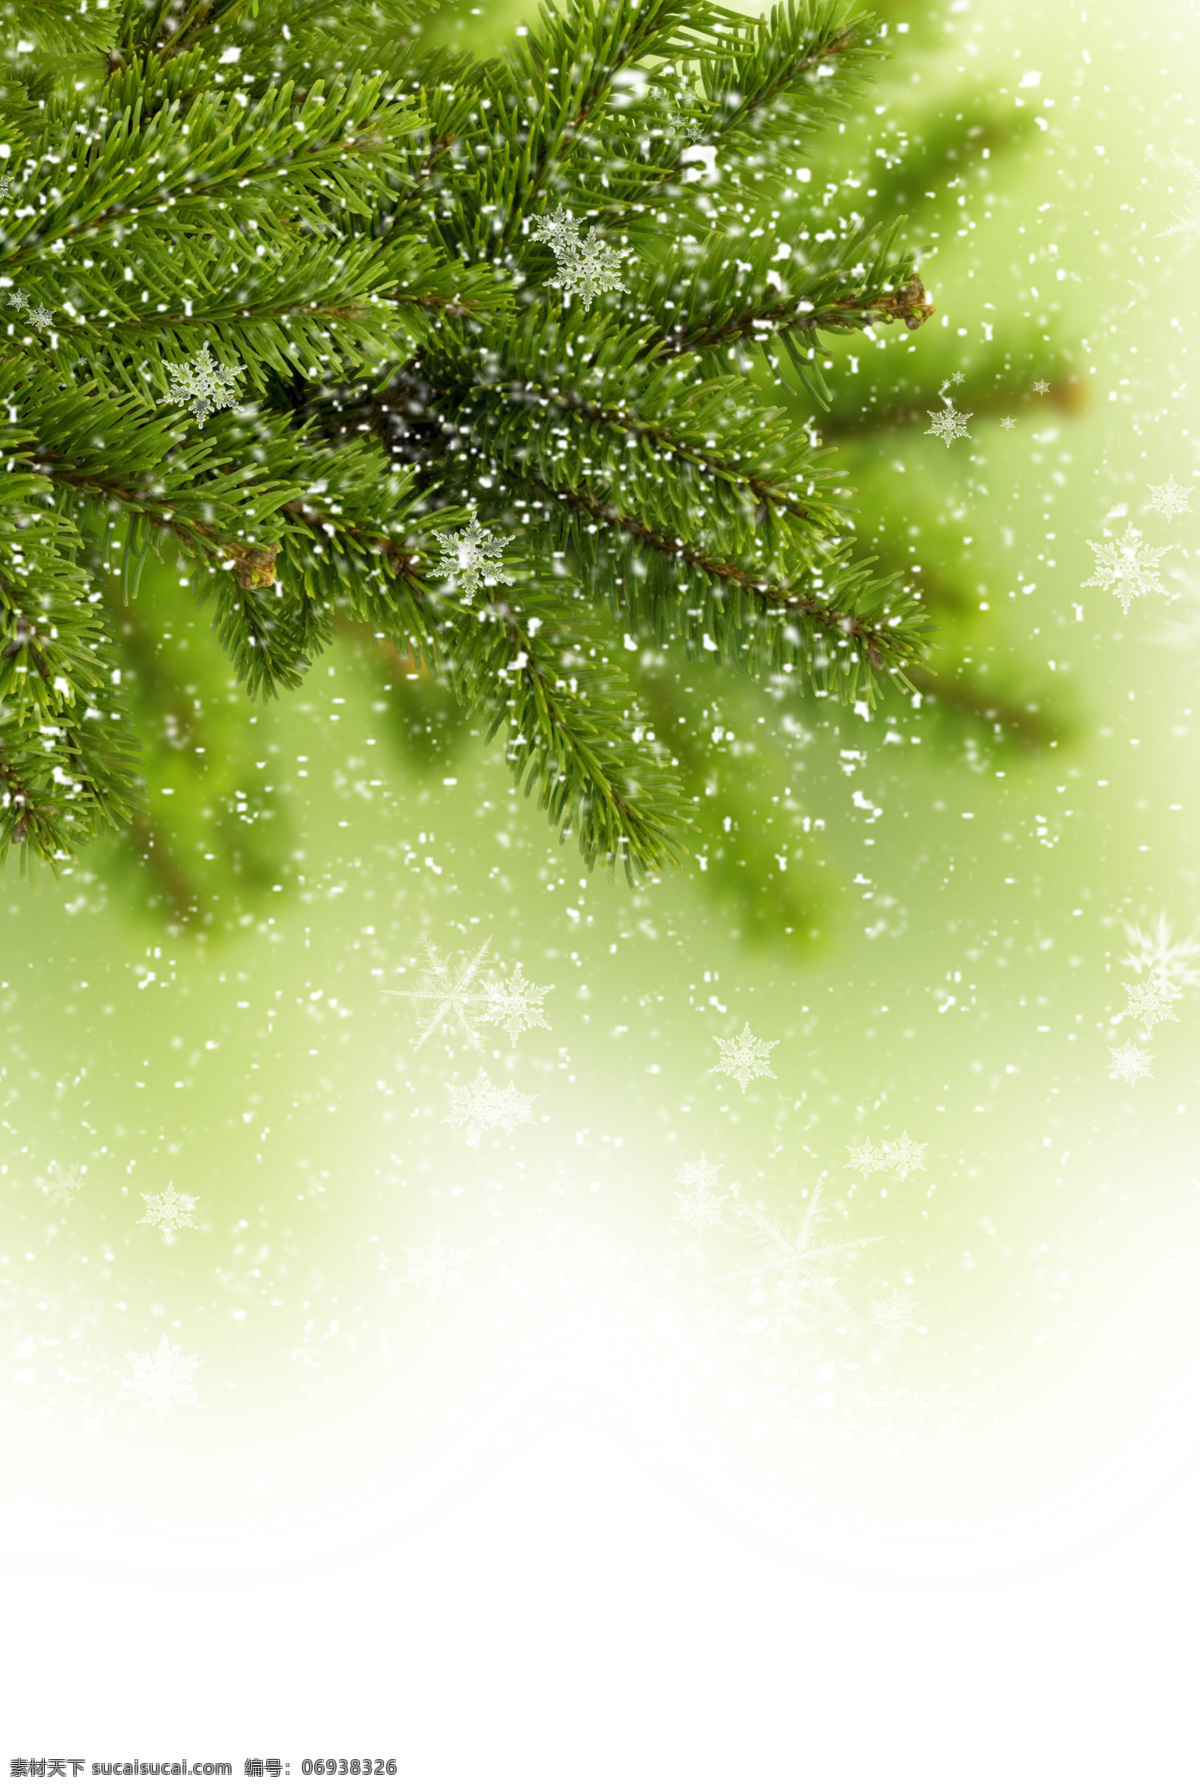 冬天 绿色 云杉 圣诞节素材 新年素材 圣诞节背景 新年背景 雪花背景 节日庆典 生活百科 白色